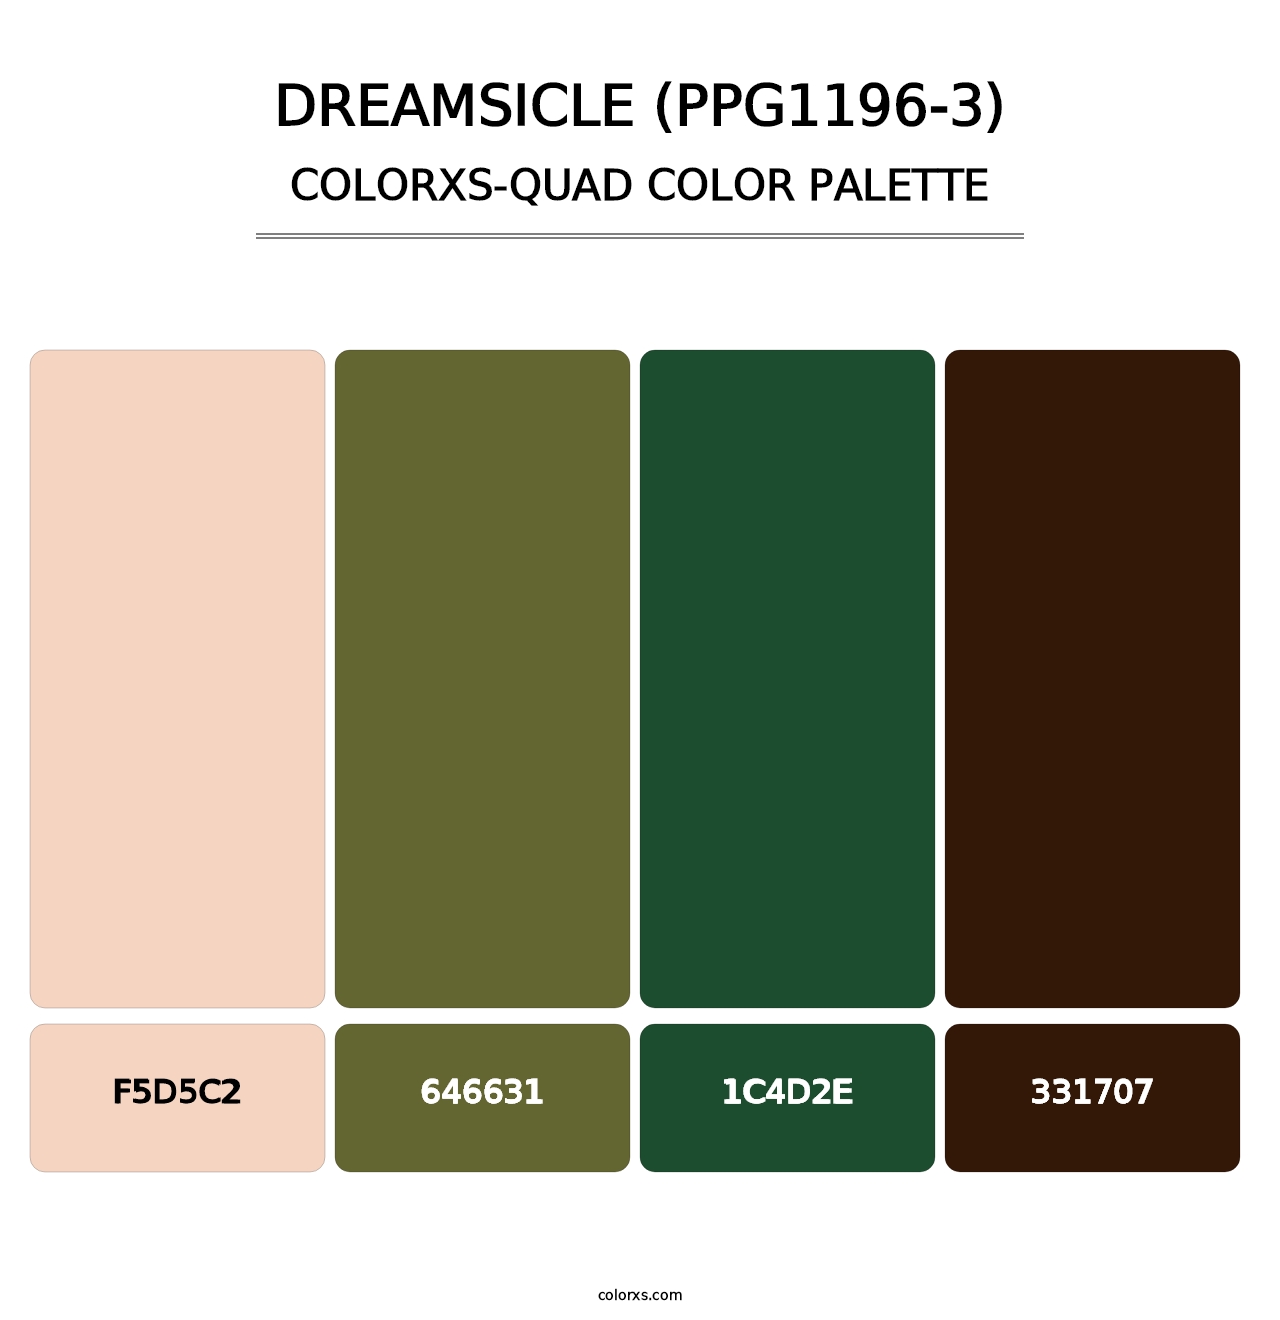 Dreamsicle (PPG1196-3) - Colorxs Quad Palette